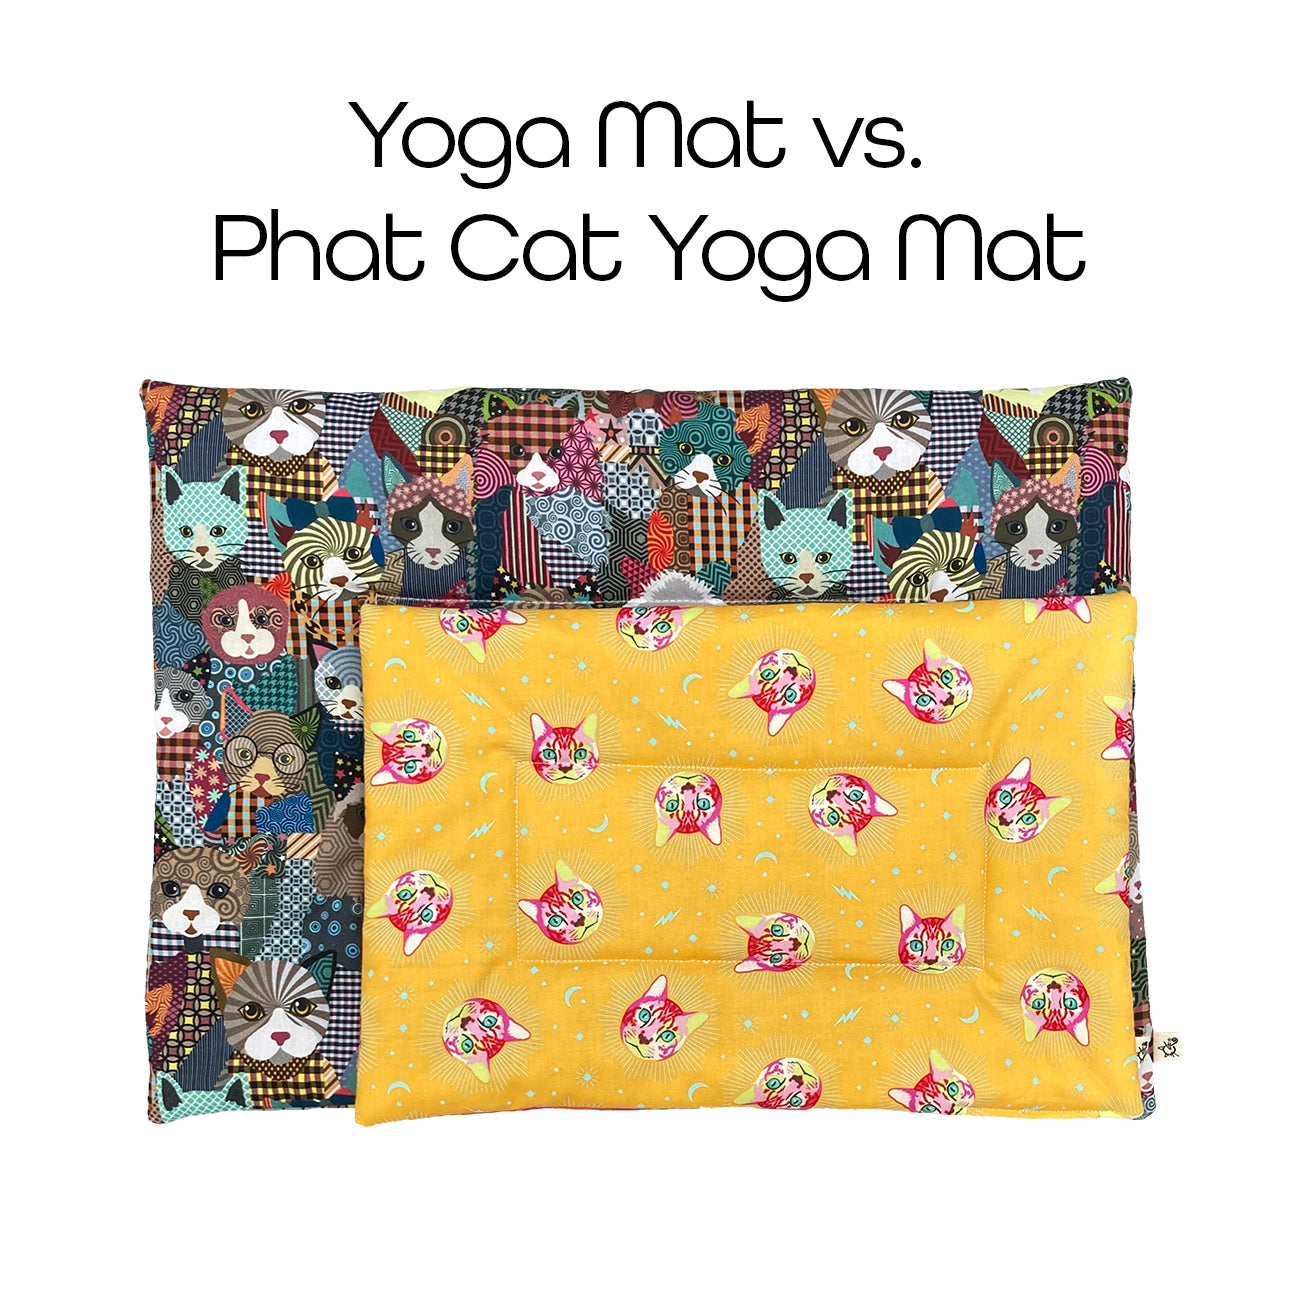 Phat Cat Yoga Mat